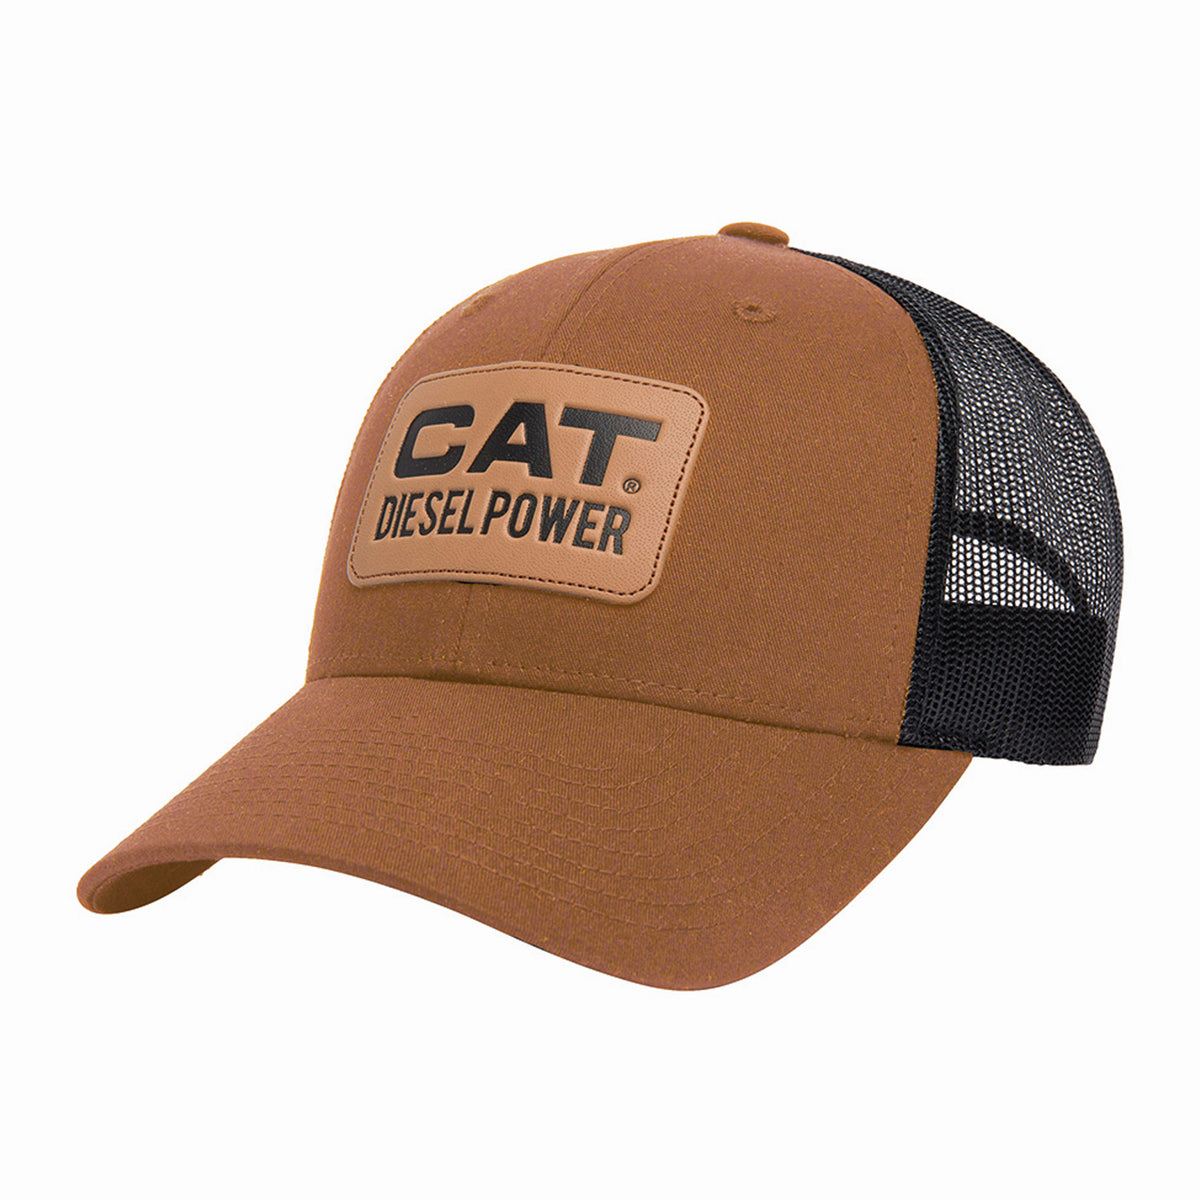 CAT X Richardson 115 Diesel Power Trucker Hat - Work World - Workwear, Work Boots, Safety Gear